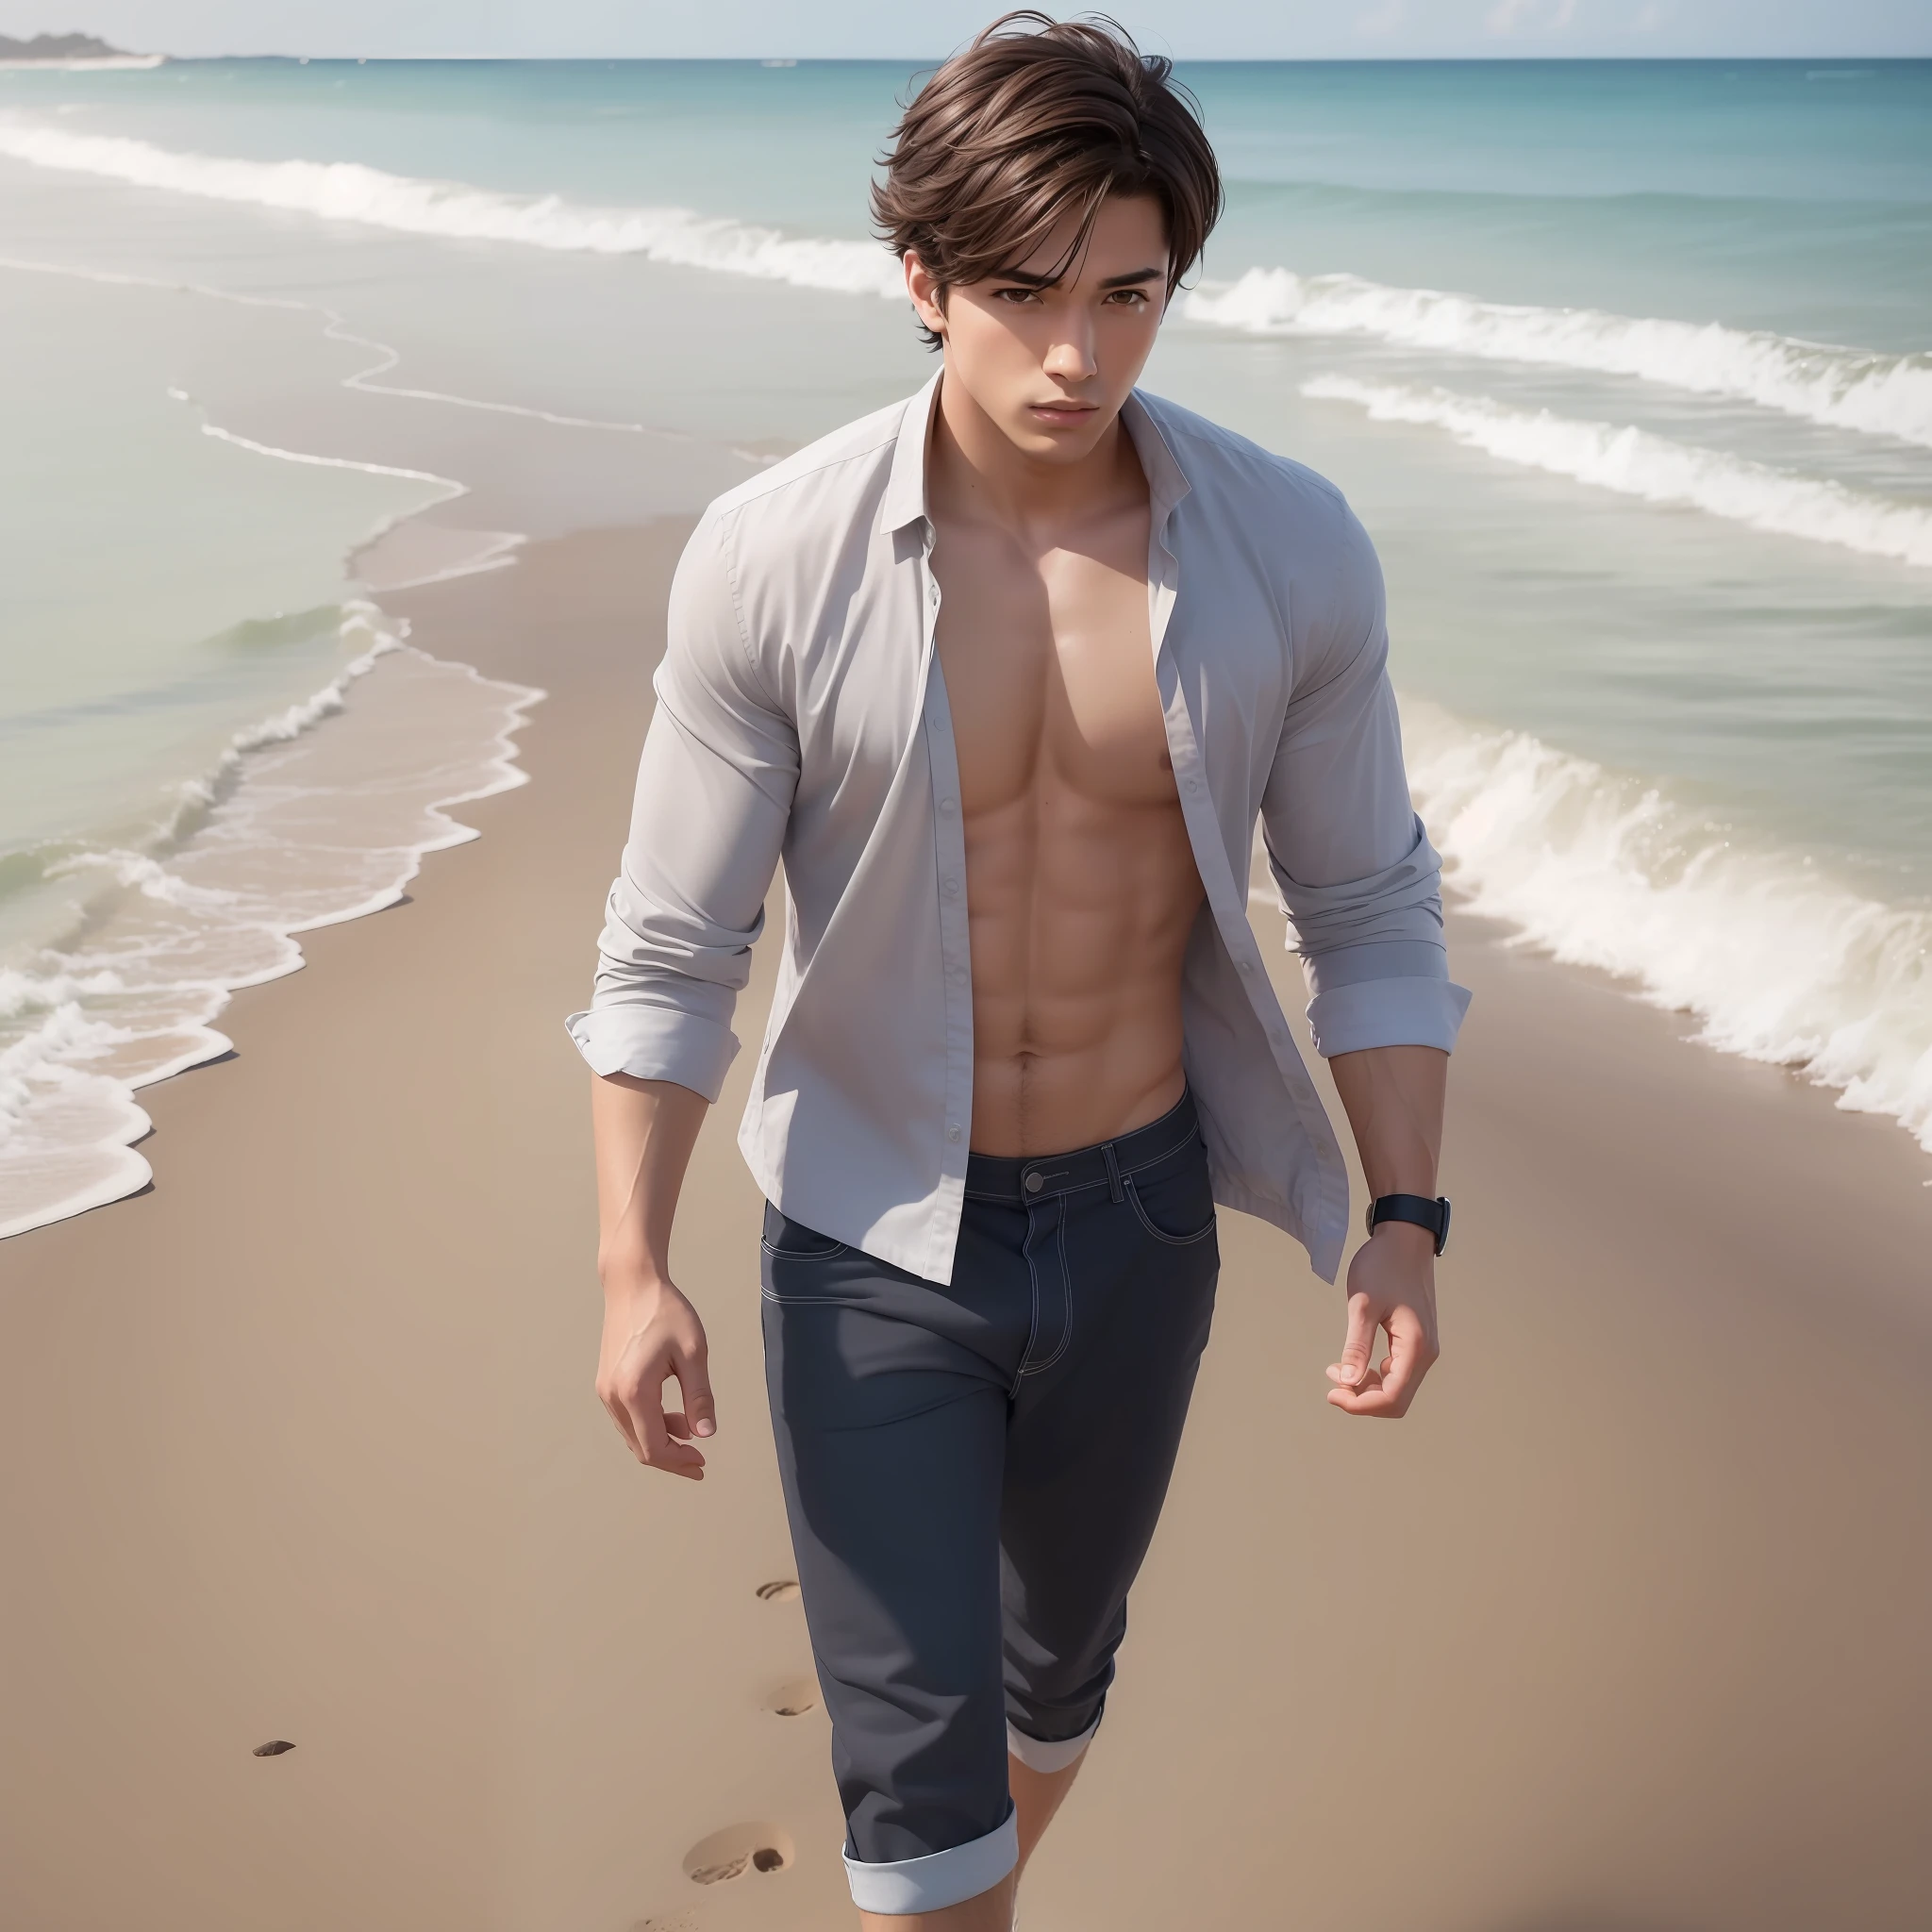 (杰作) 8K 分辨率, 英俊的年轻人在热门海滩上漫步, 黑色短发, 淡褐色的眼睛, 棕色的眼睛, 海滩上的衣服, 动漫风格, 模型风格,